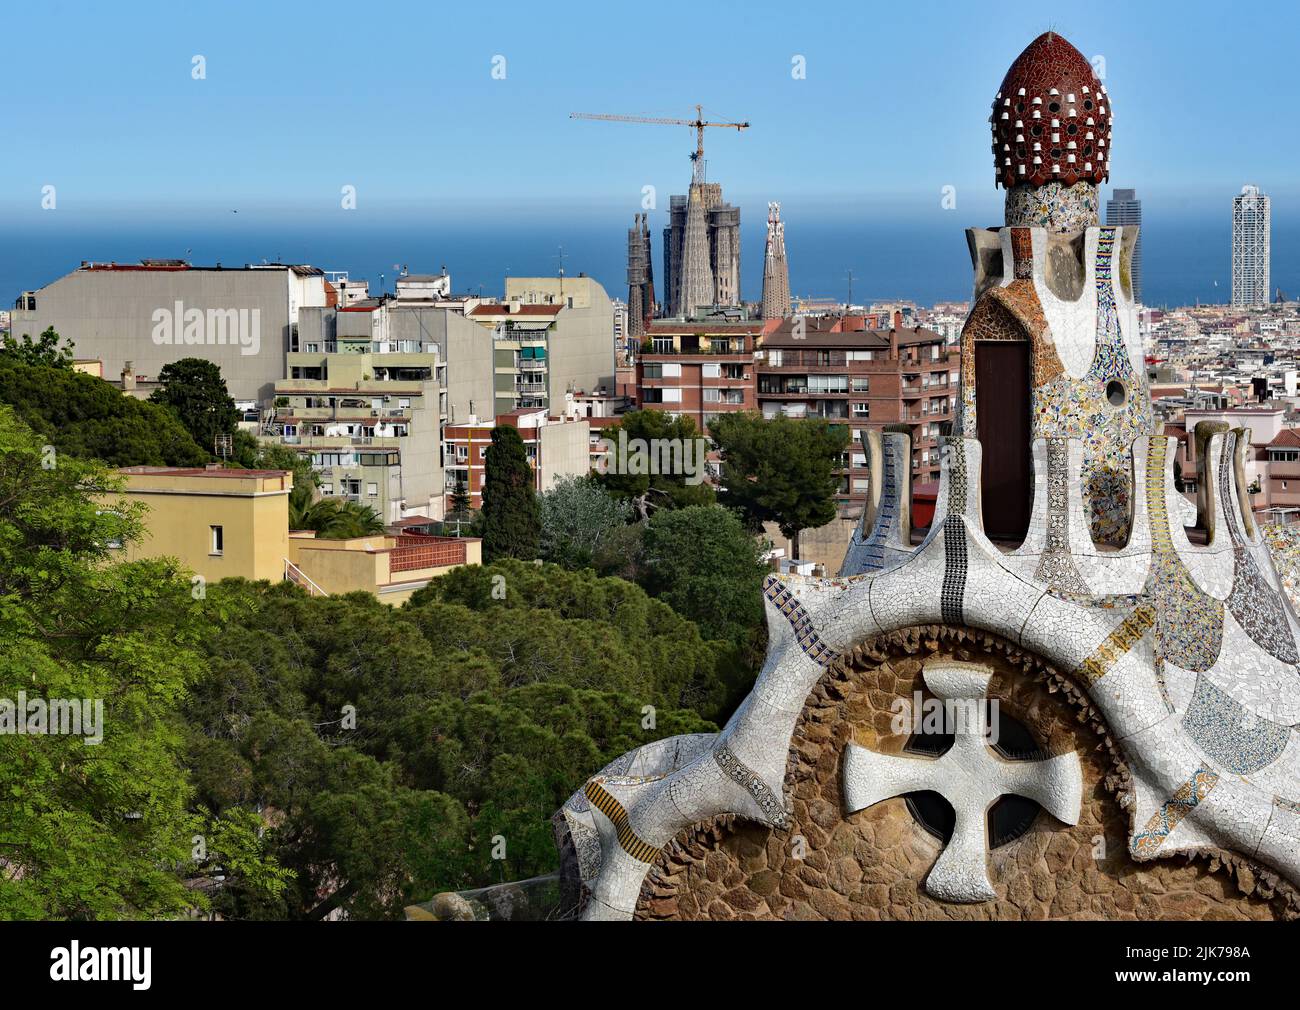 Nahaufnahme der aus Stein gebauten Casa del Guarda. Das mosaikbedeckte Dach und die pilzförmige Kuppel wirken wie ein Märchen aus dem Park Güell, Barcelona. Stockfoto